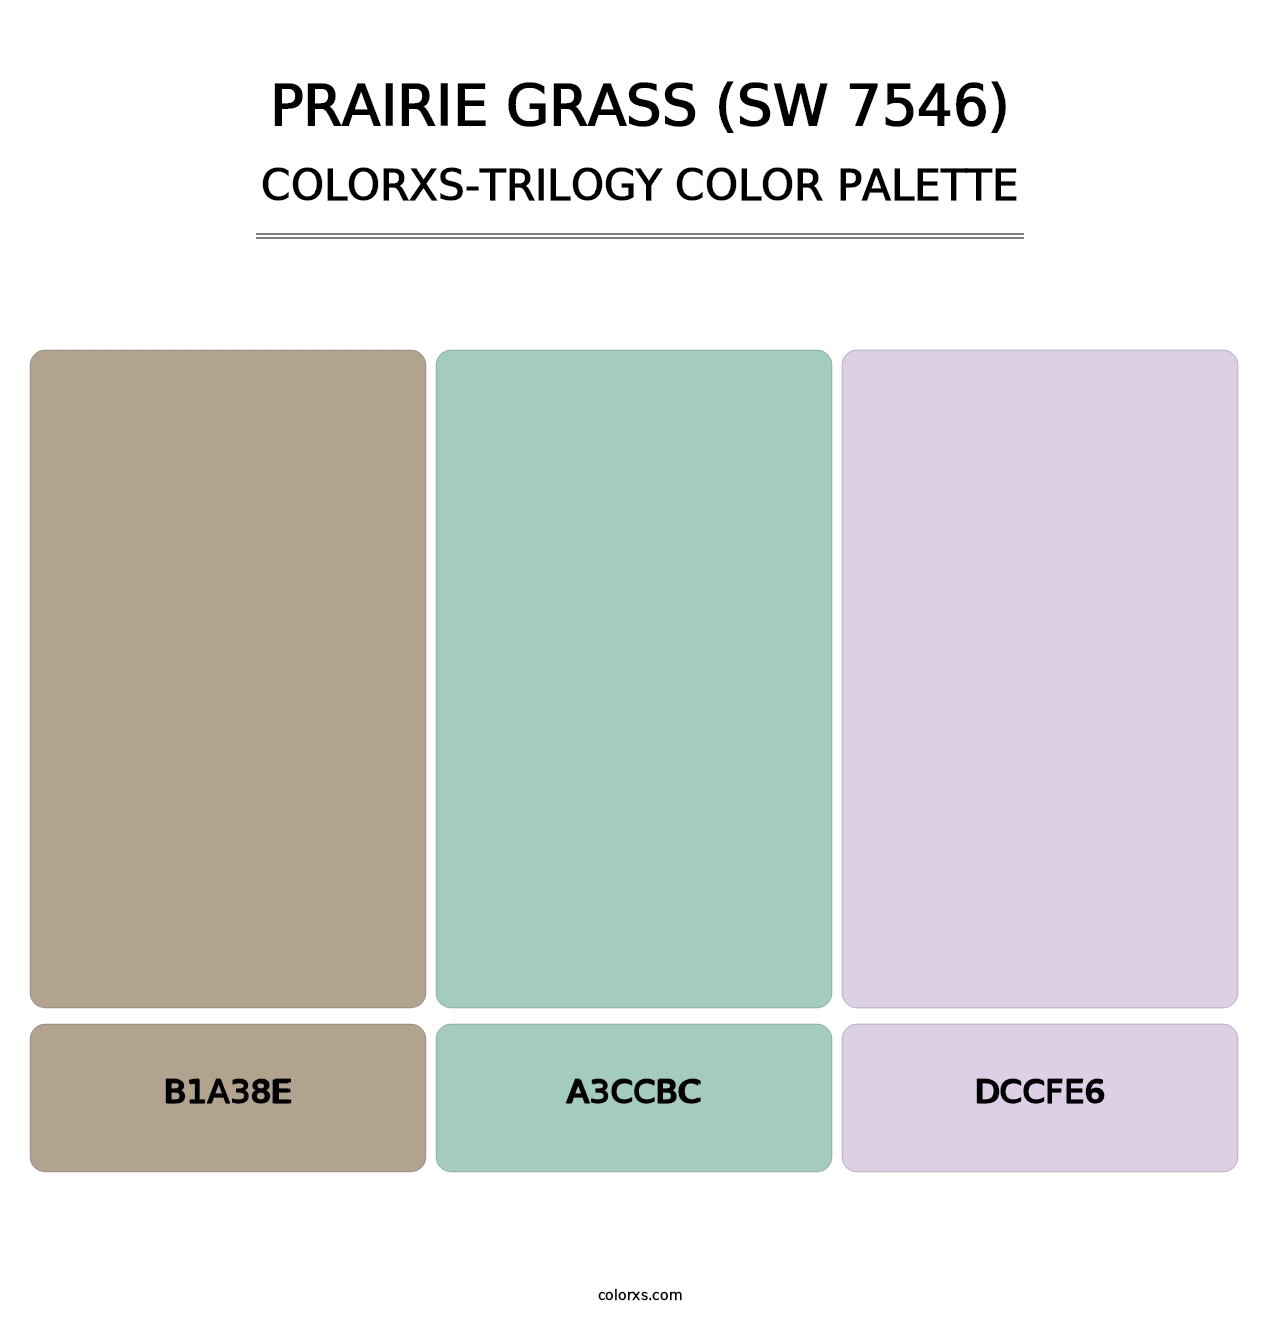 Prairie Grass (SW 7546) - Colorxs Trilogy Palette